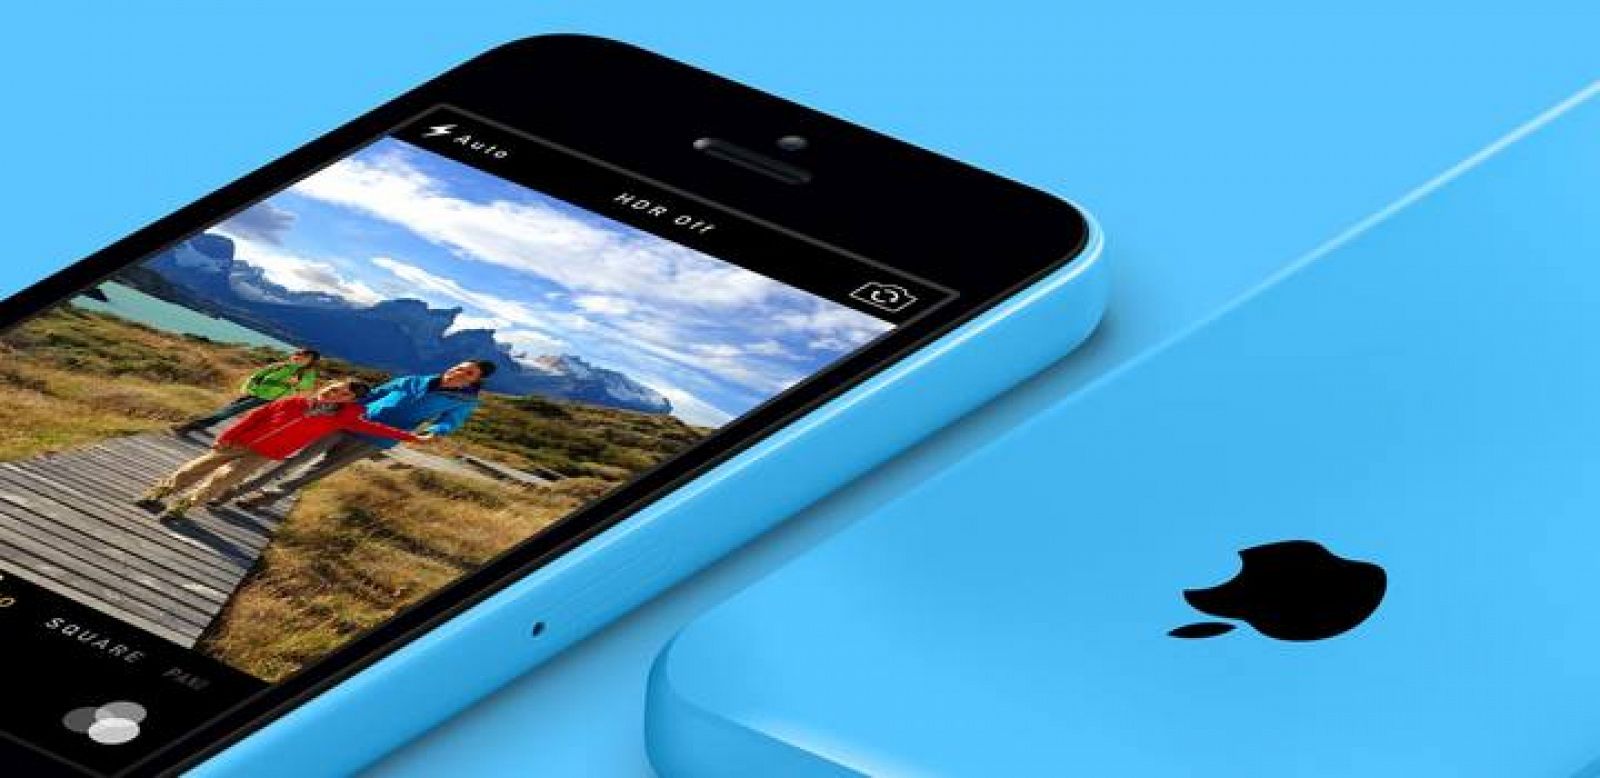  iPhone 5c en azul.